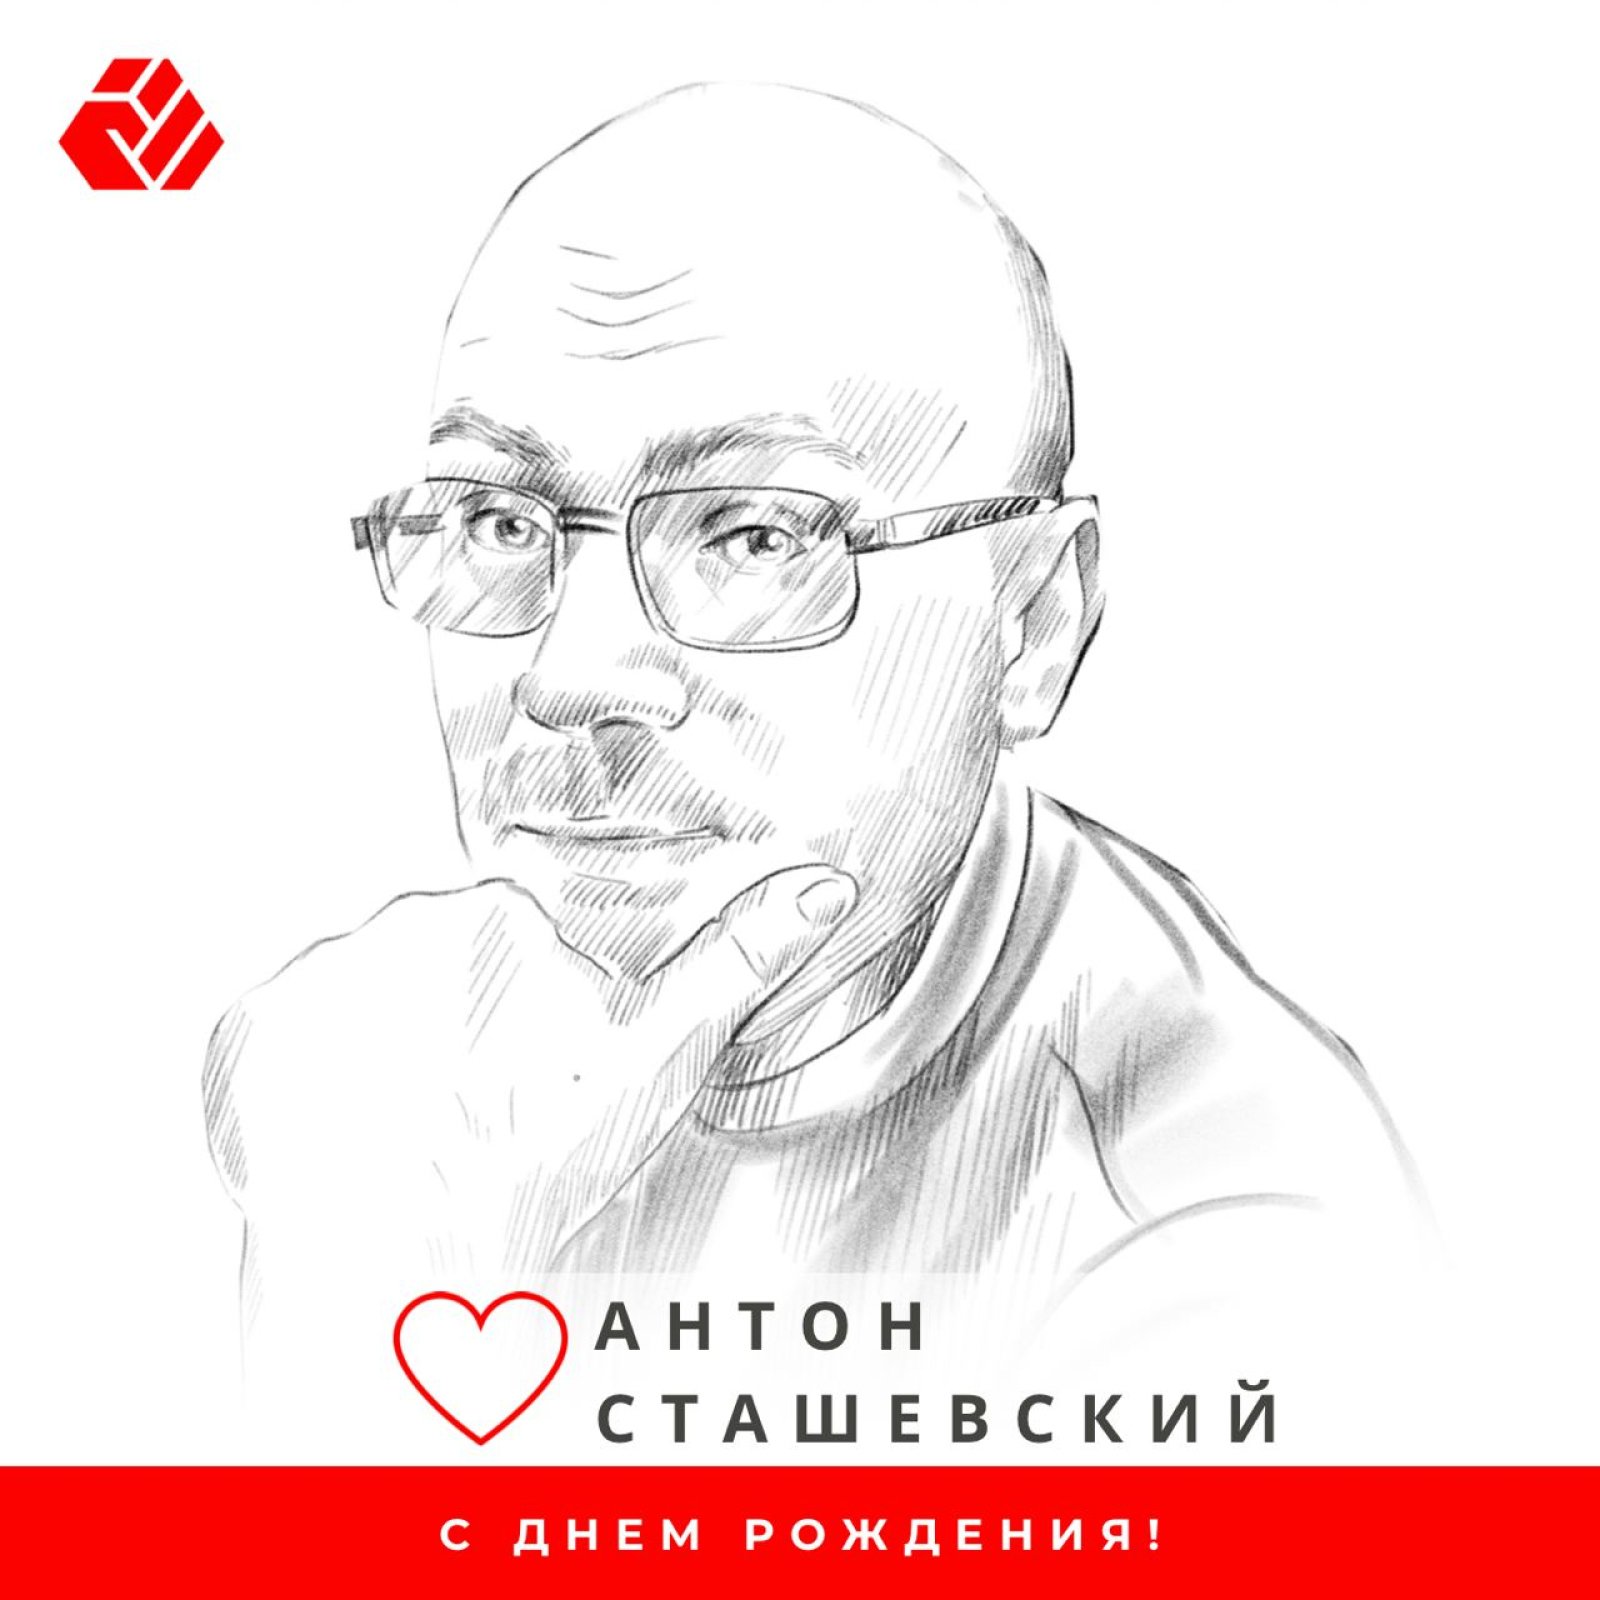 Birthday of Anton Stashevsky